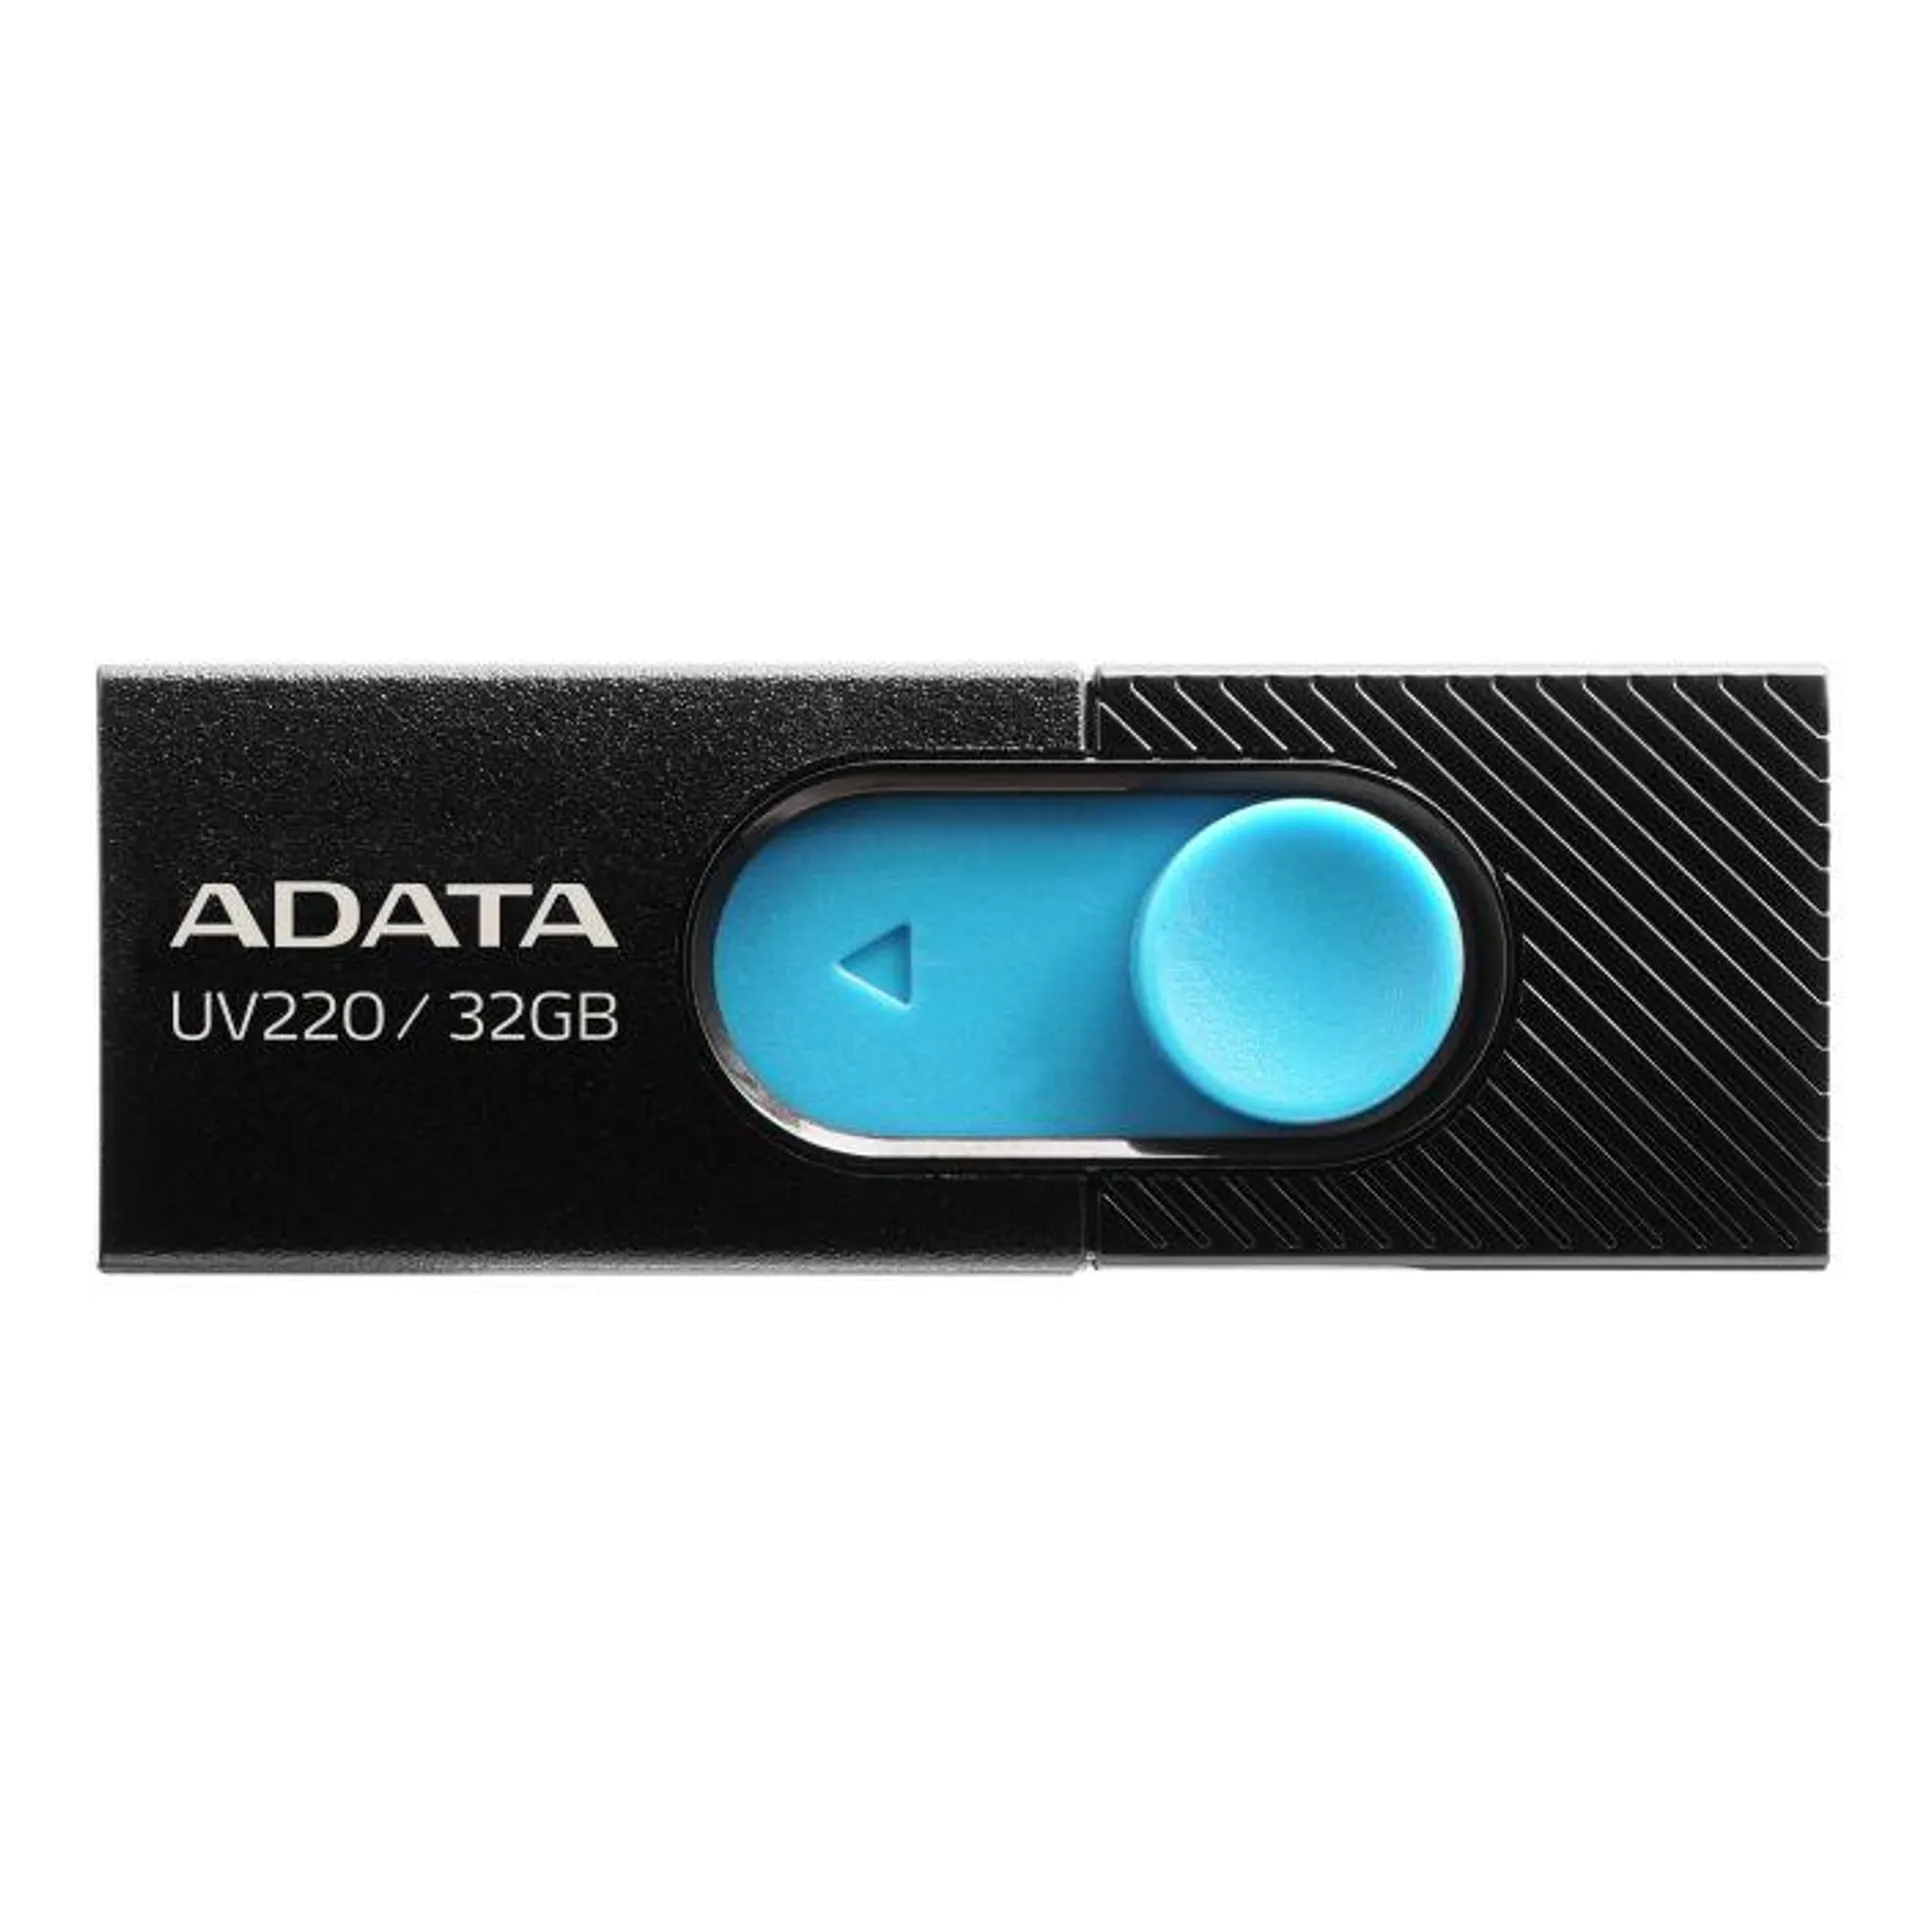 Adata AUV22032GRBKBL, USB 2.0 32GB Flash Drive, Black/Blue